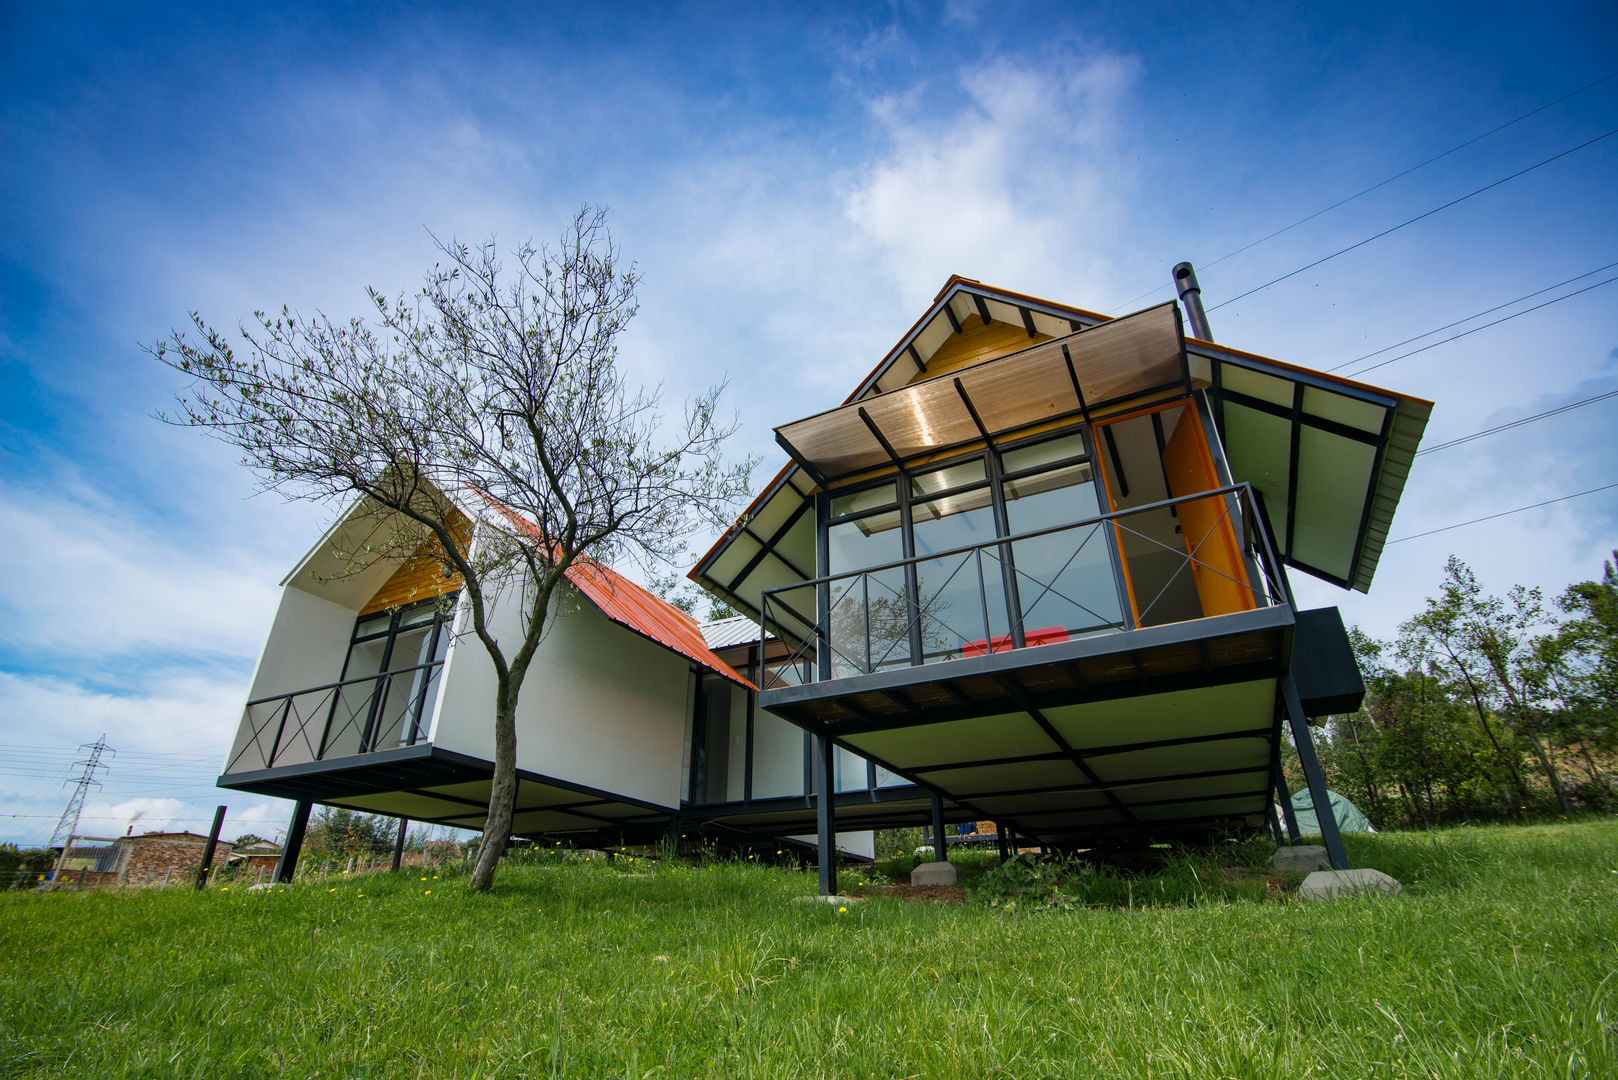 Refugio El Rosal Camacho Estudio de Arquitectura Casas campestres Derivados de madera Transparente vivienda,,modular,,sostenible,,madera,,campo,,rural